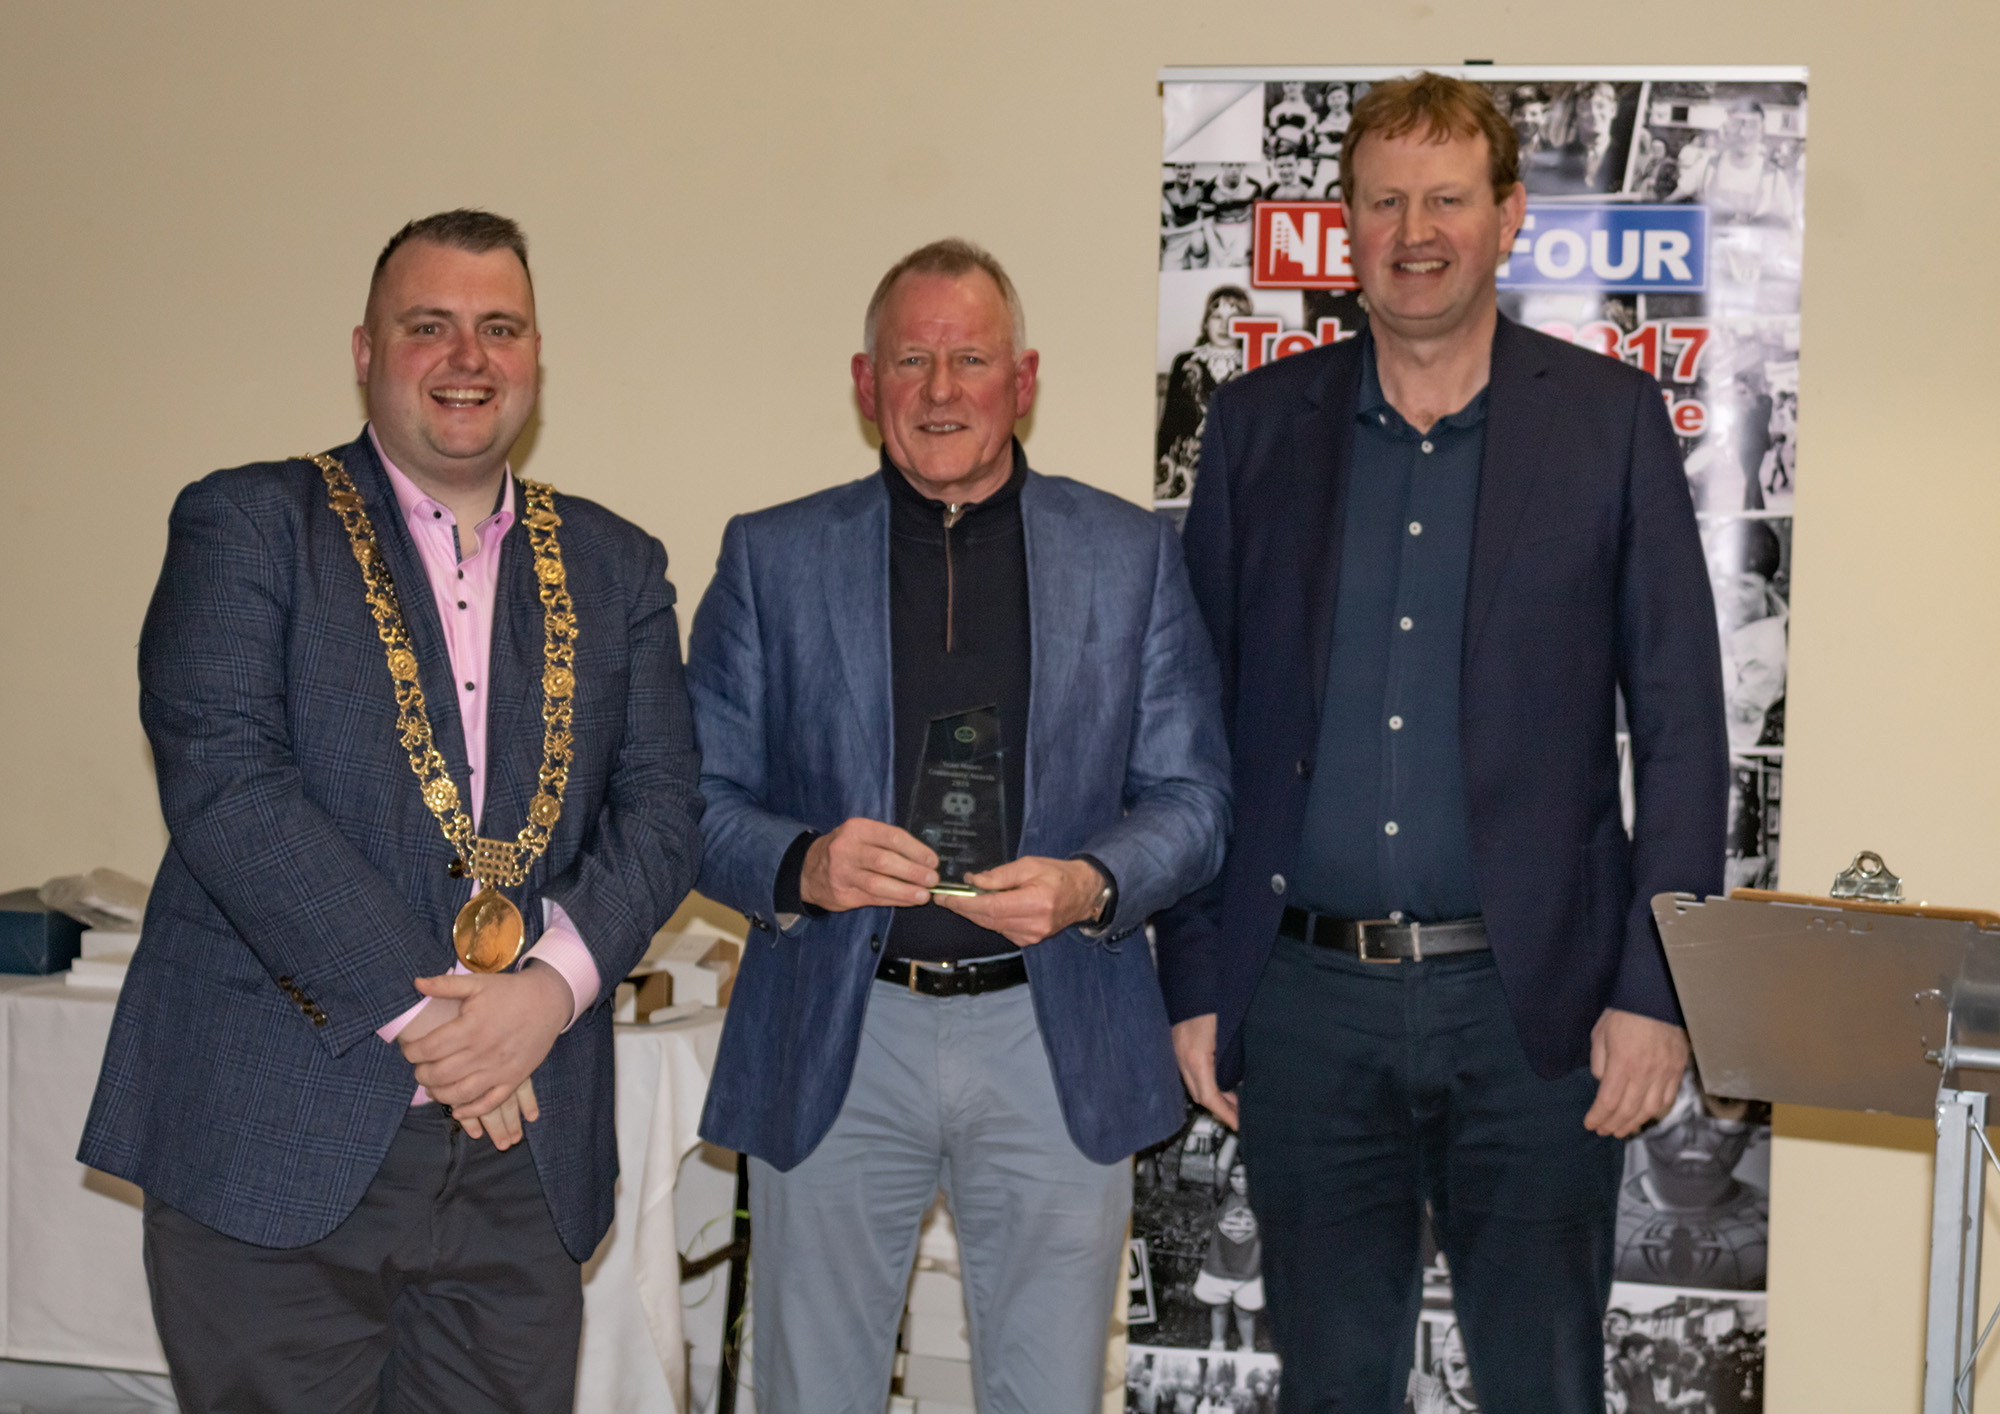 David Turner, Chair SAMRA, with Lord Mayor Daithí de Róiste and Jim O’Callaghan TD accepting award on behalf of Rodney Devitt